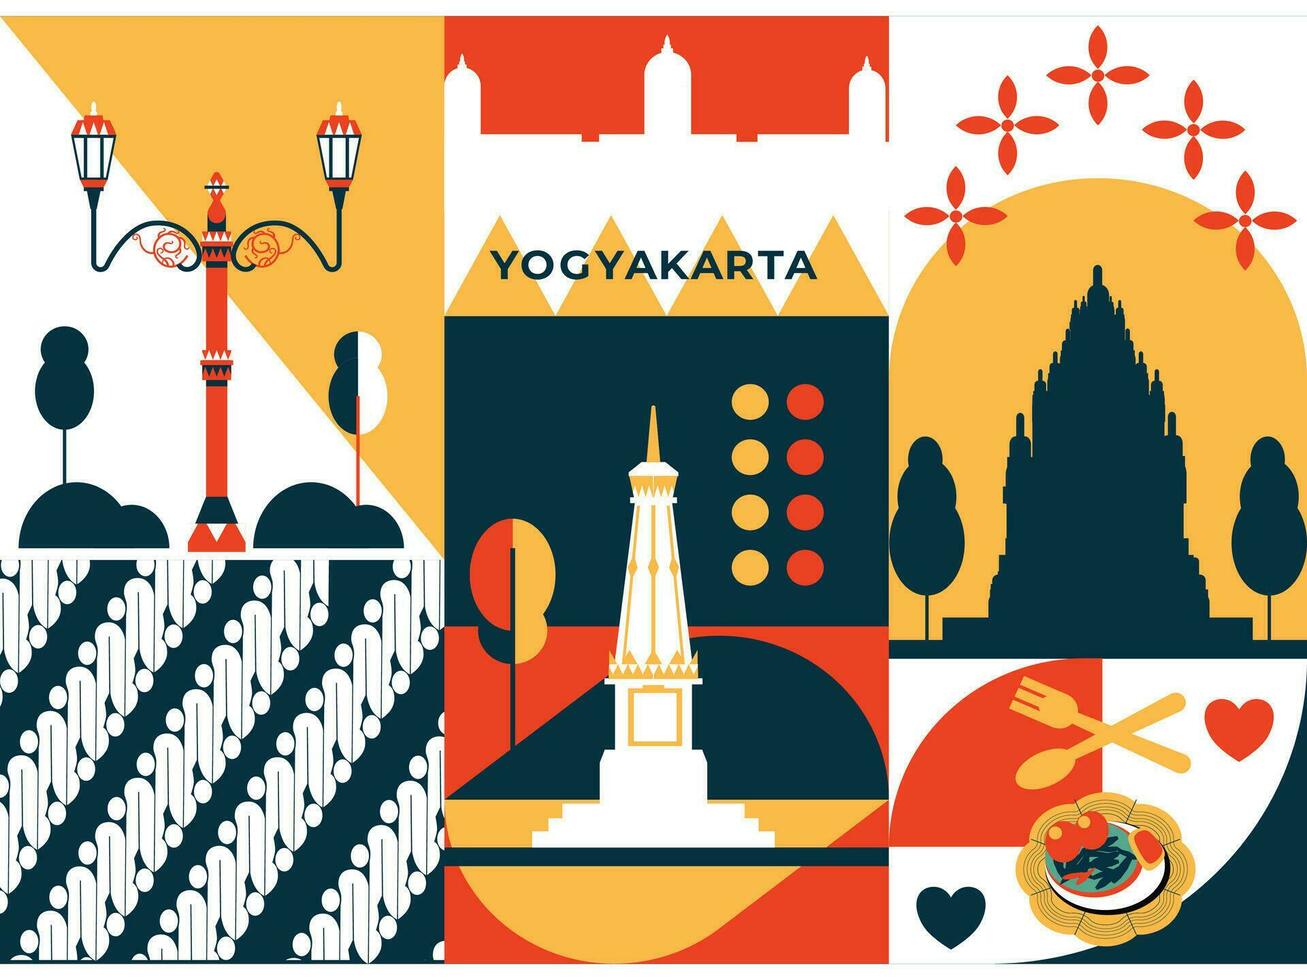 yogyakarta turismo e viagem gráfico ilustração vetor